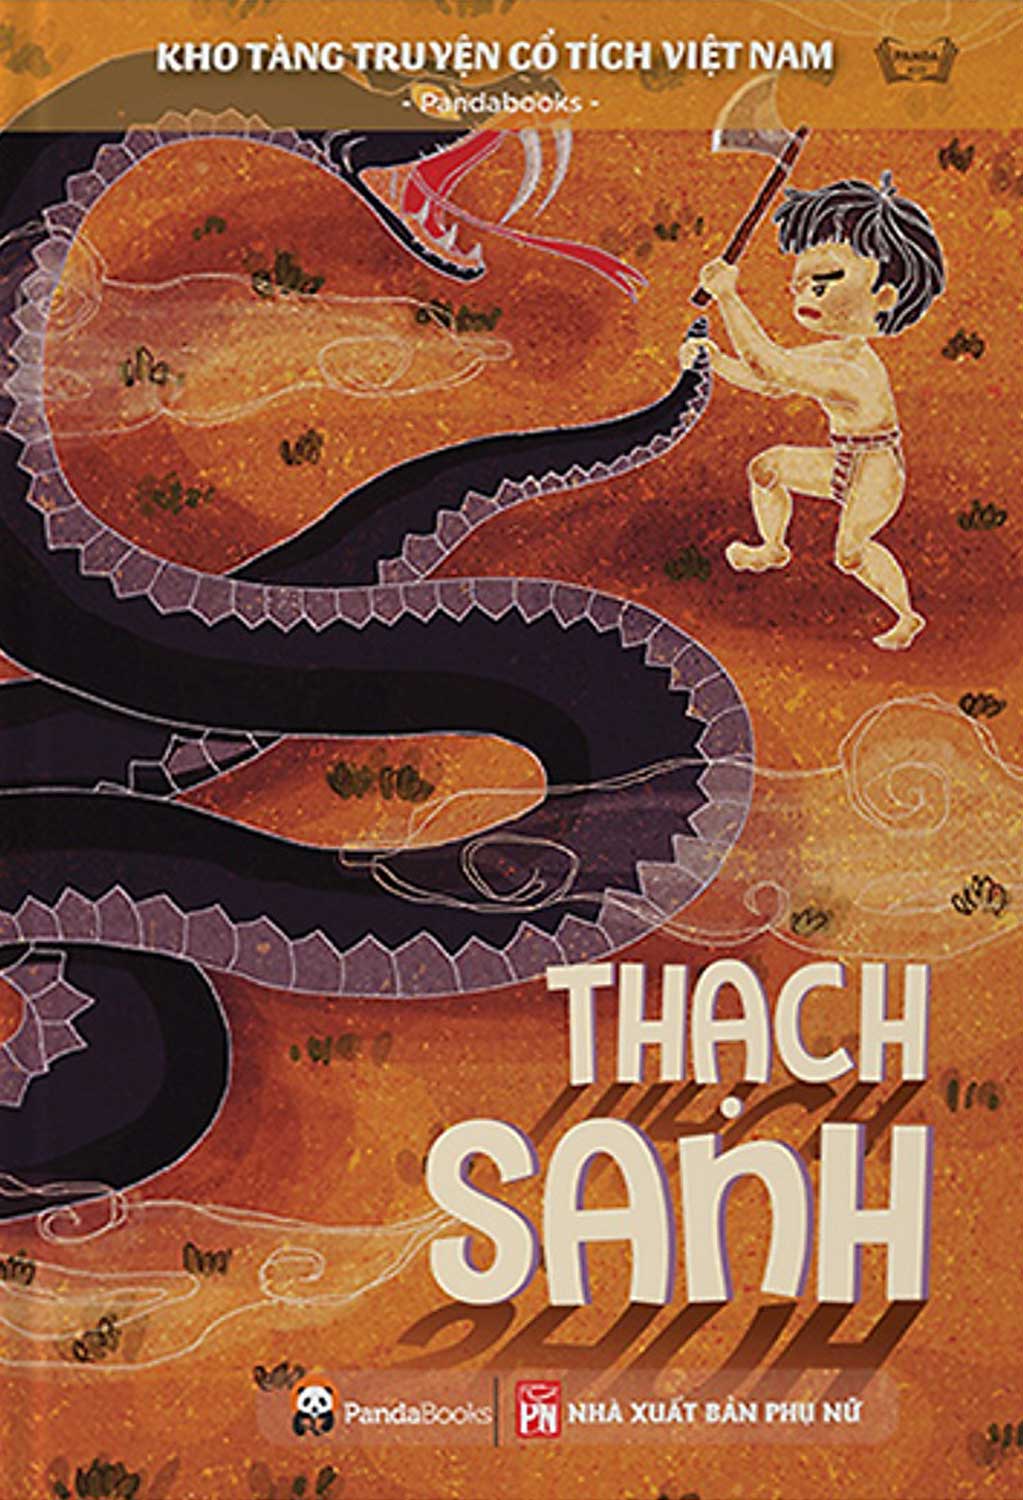 Kho Tàng Truyện Cổ Tích Việt Nam - Thạch Sanh